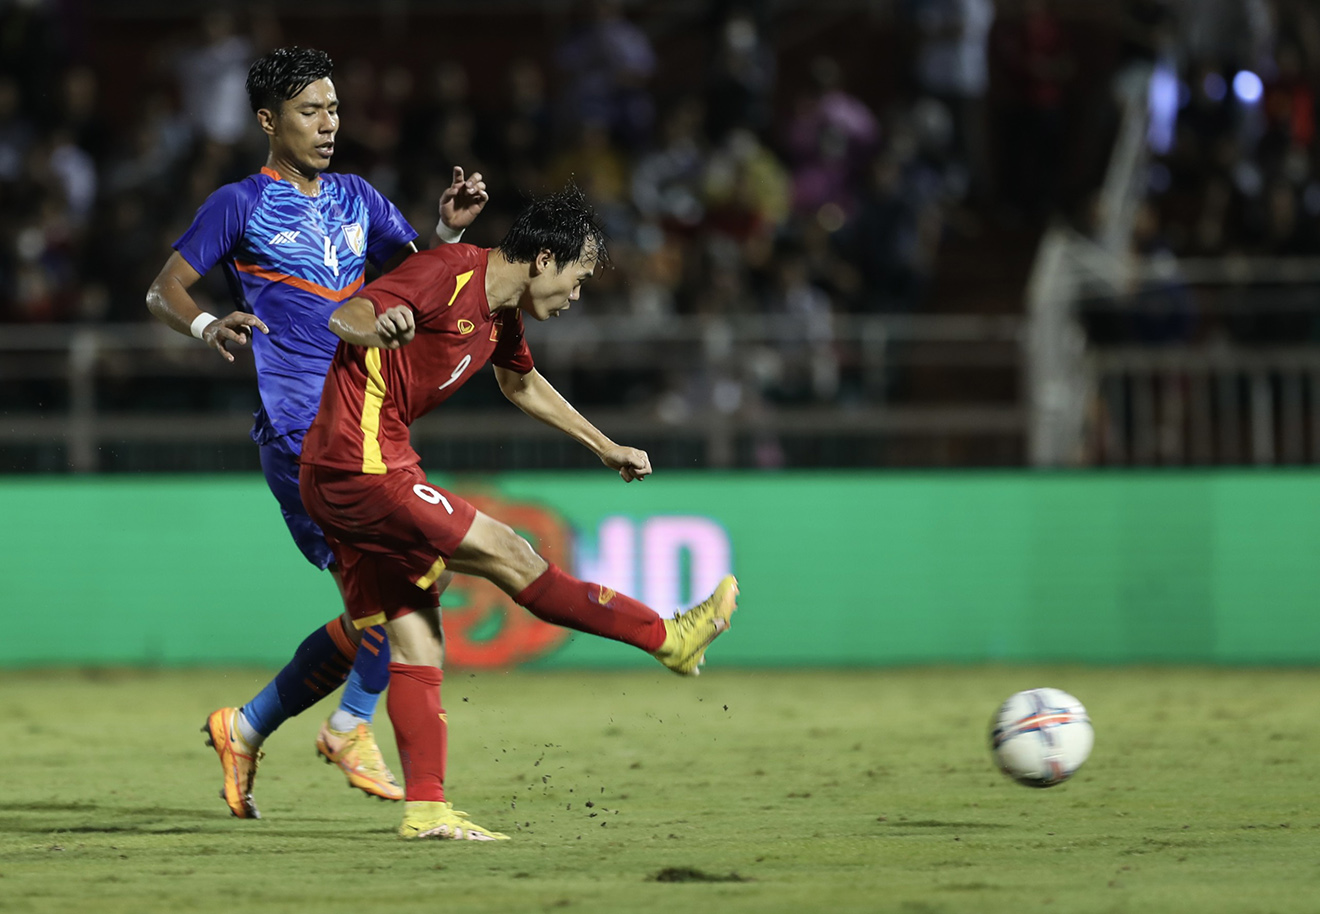 Bóng đá hôm nay 28/9: Báo Trung Quốc khen Việt Nam, Tây Ban Nha vào bán kết Nations League - ảnh 1